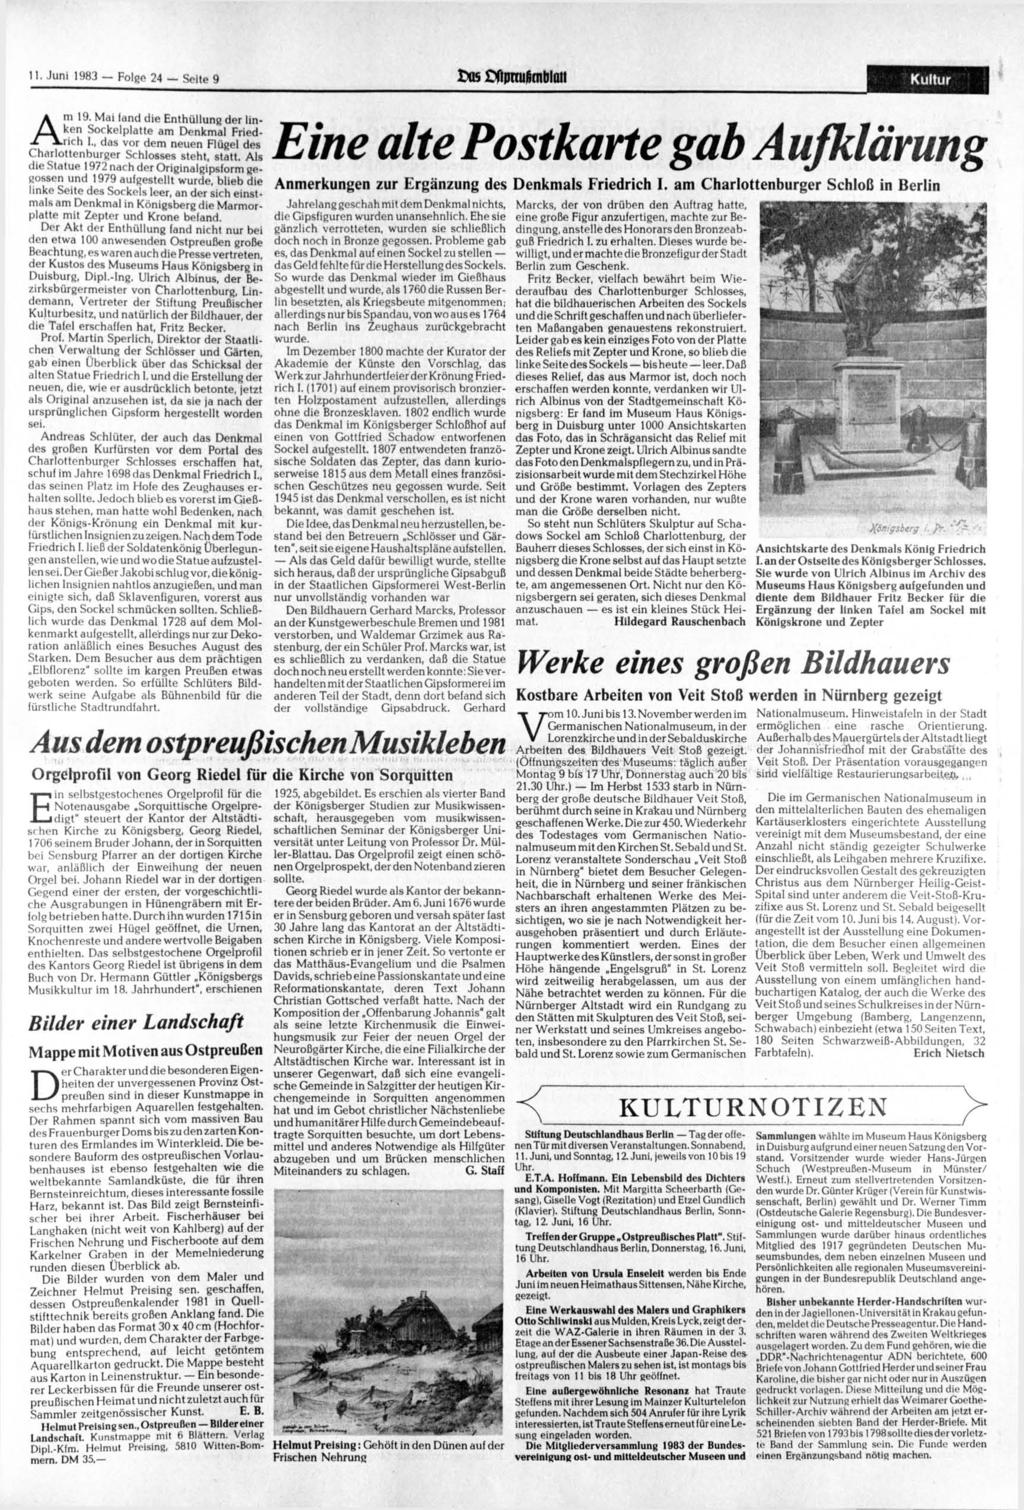 11. 1983 Folge 24 Seite 9 tttt ffpnufimblaii Kultur Am 19. Mai land die Enthüllung der linken Sockelplatte am Denkmal Friedrich I.